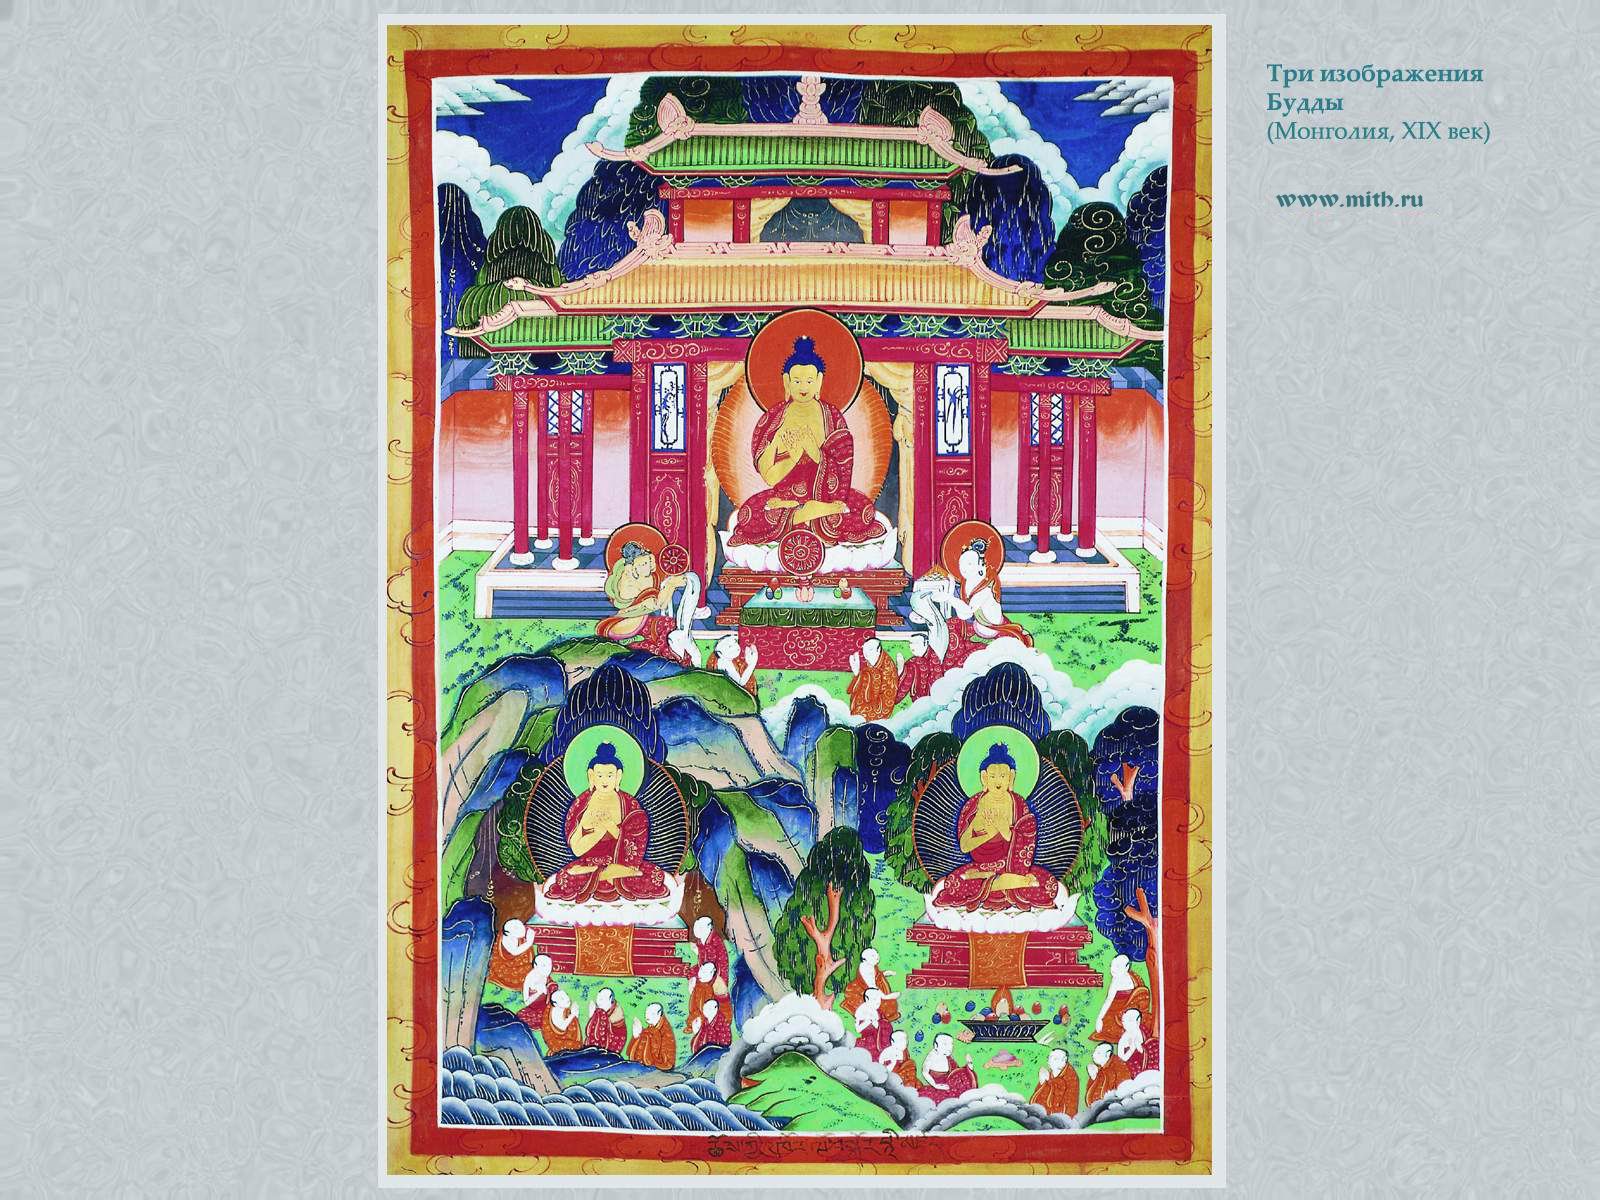 Тройное изображение Будды

перейти к книге 'Тибетская живопись'